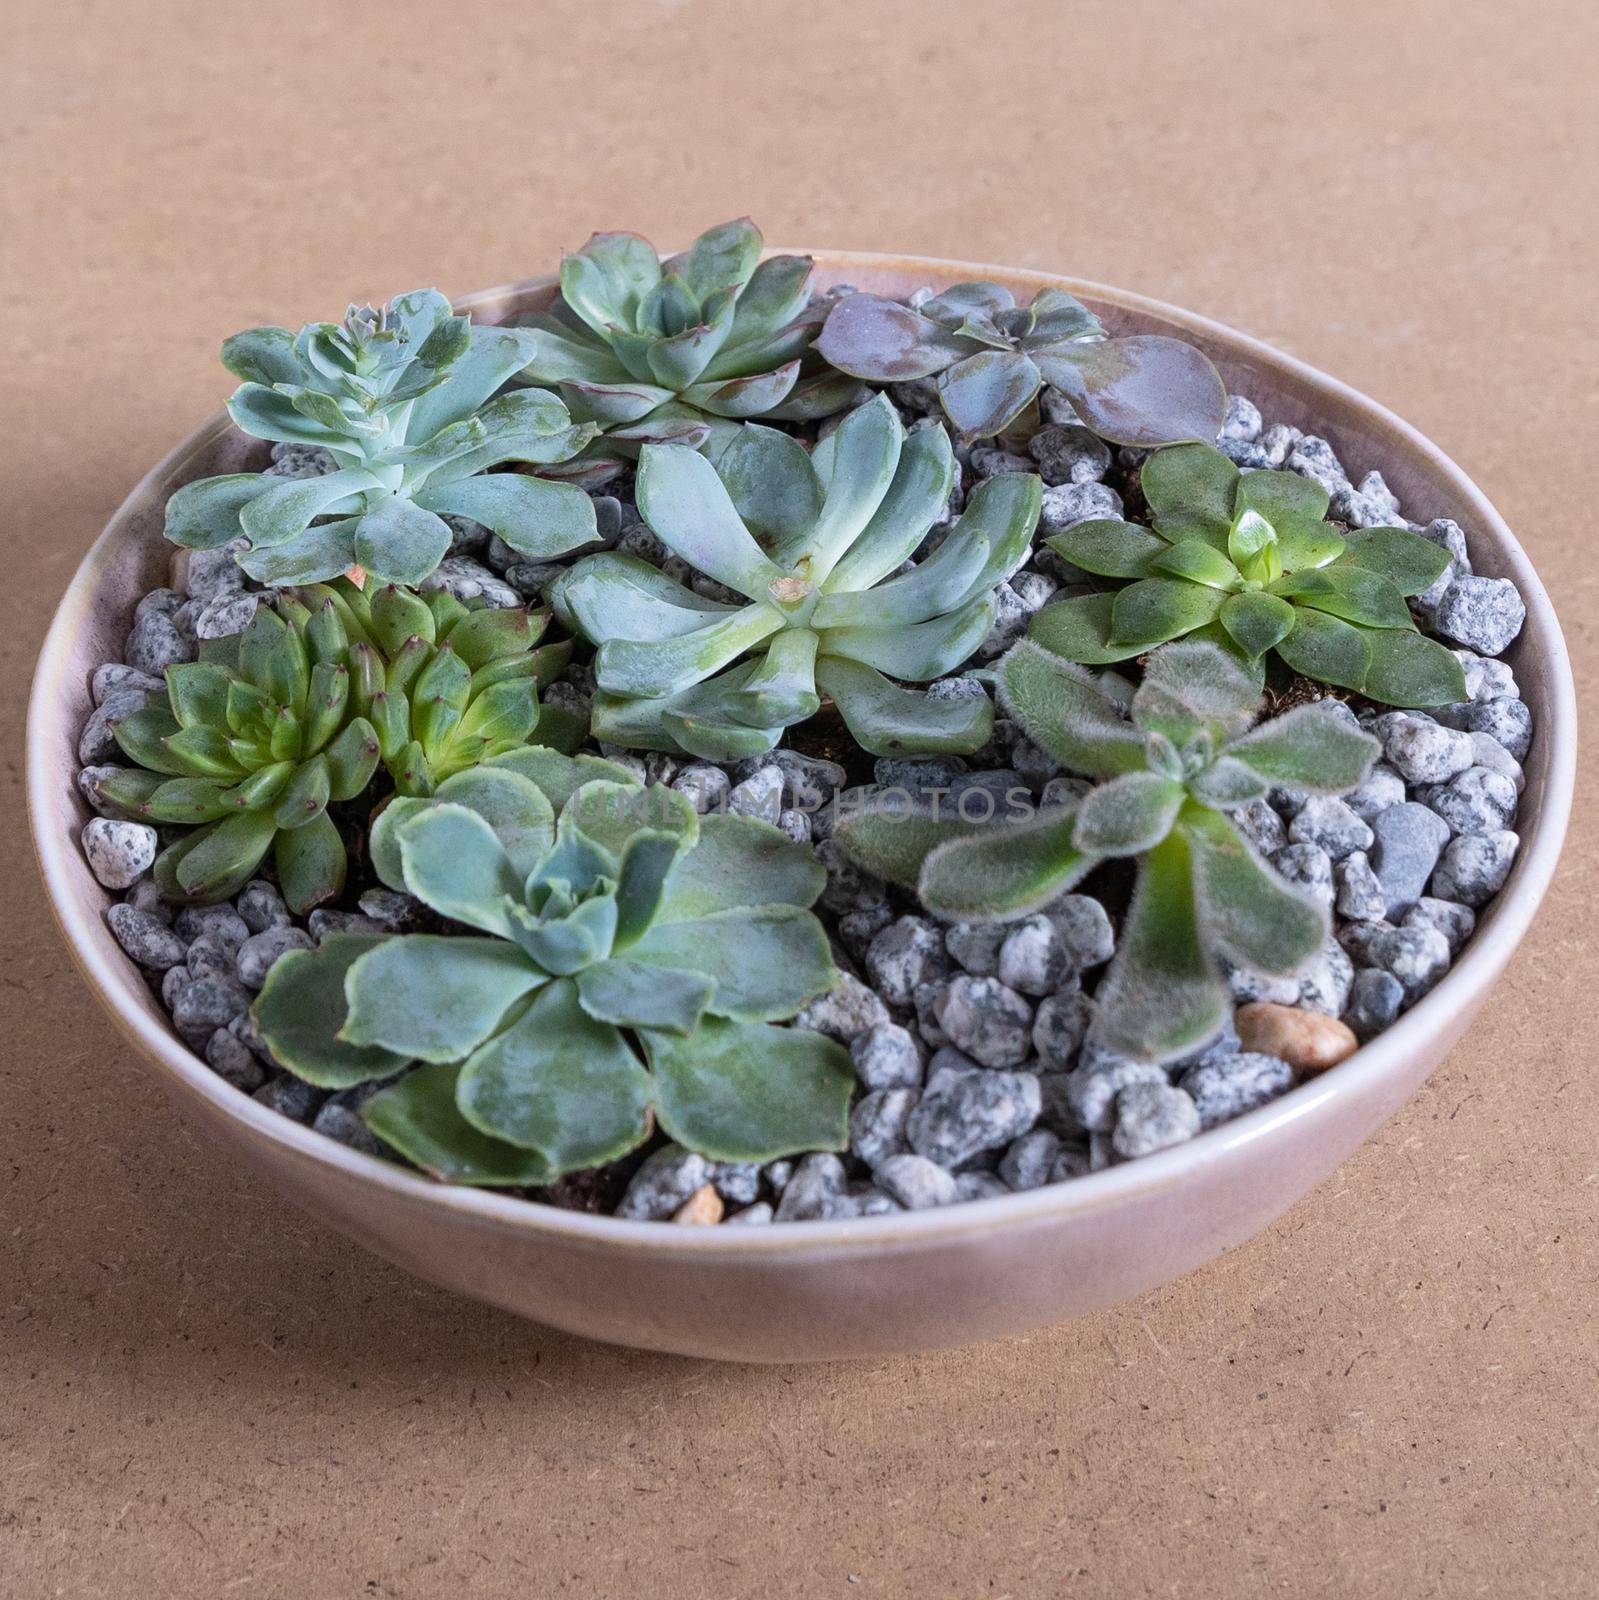 Terrarium, sand, rock, succulent, cactus in the white ceramic pot by ferhad